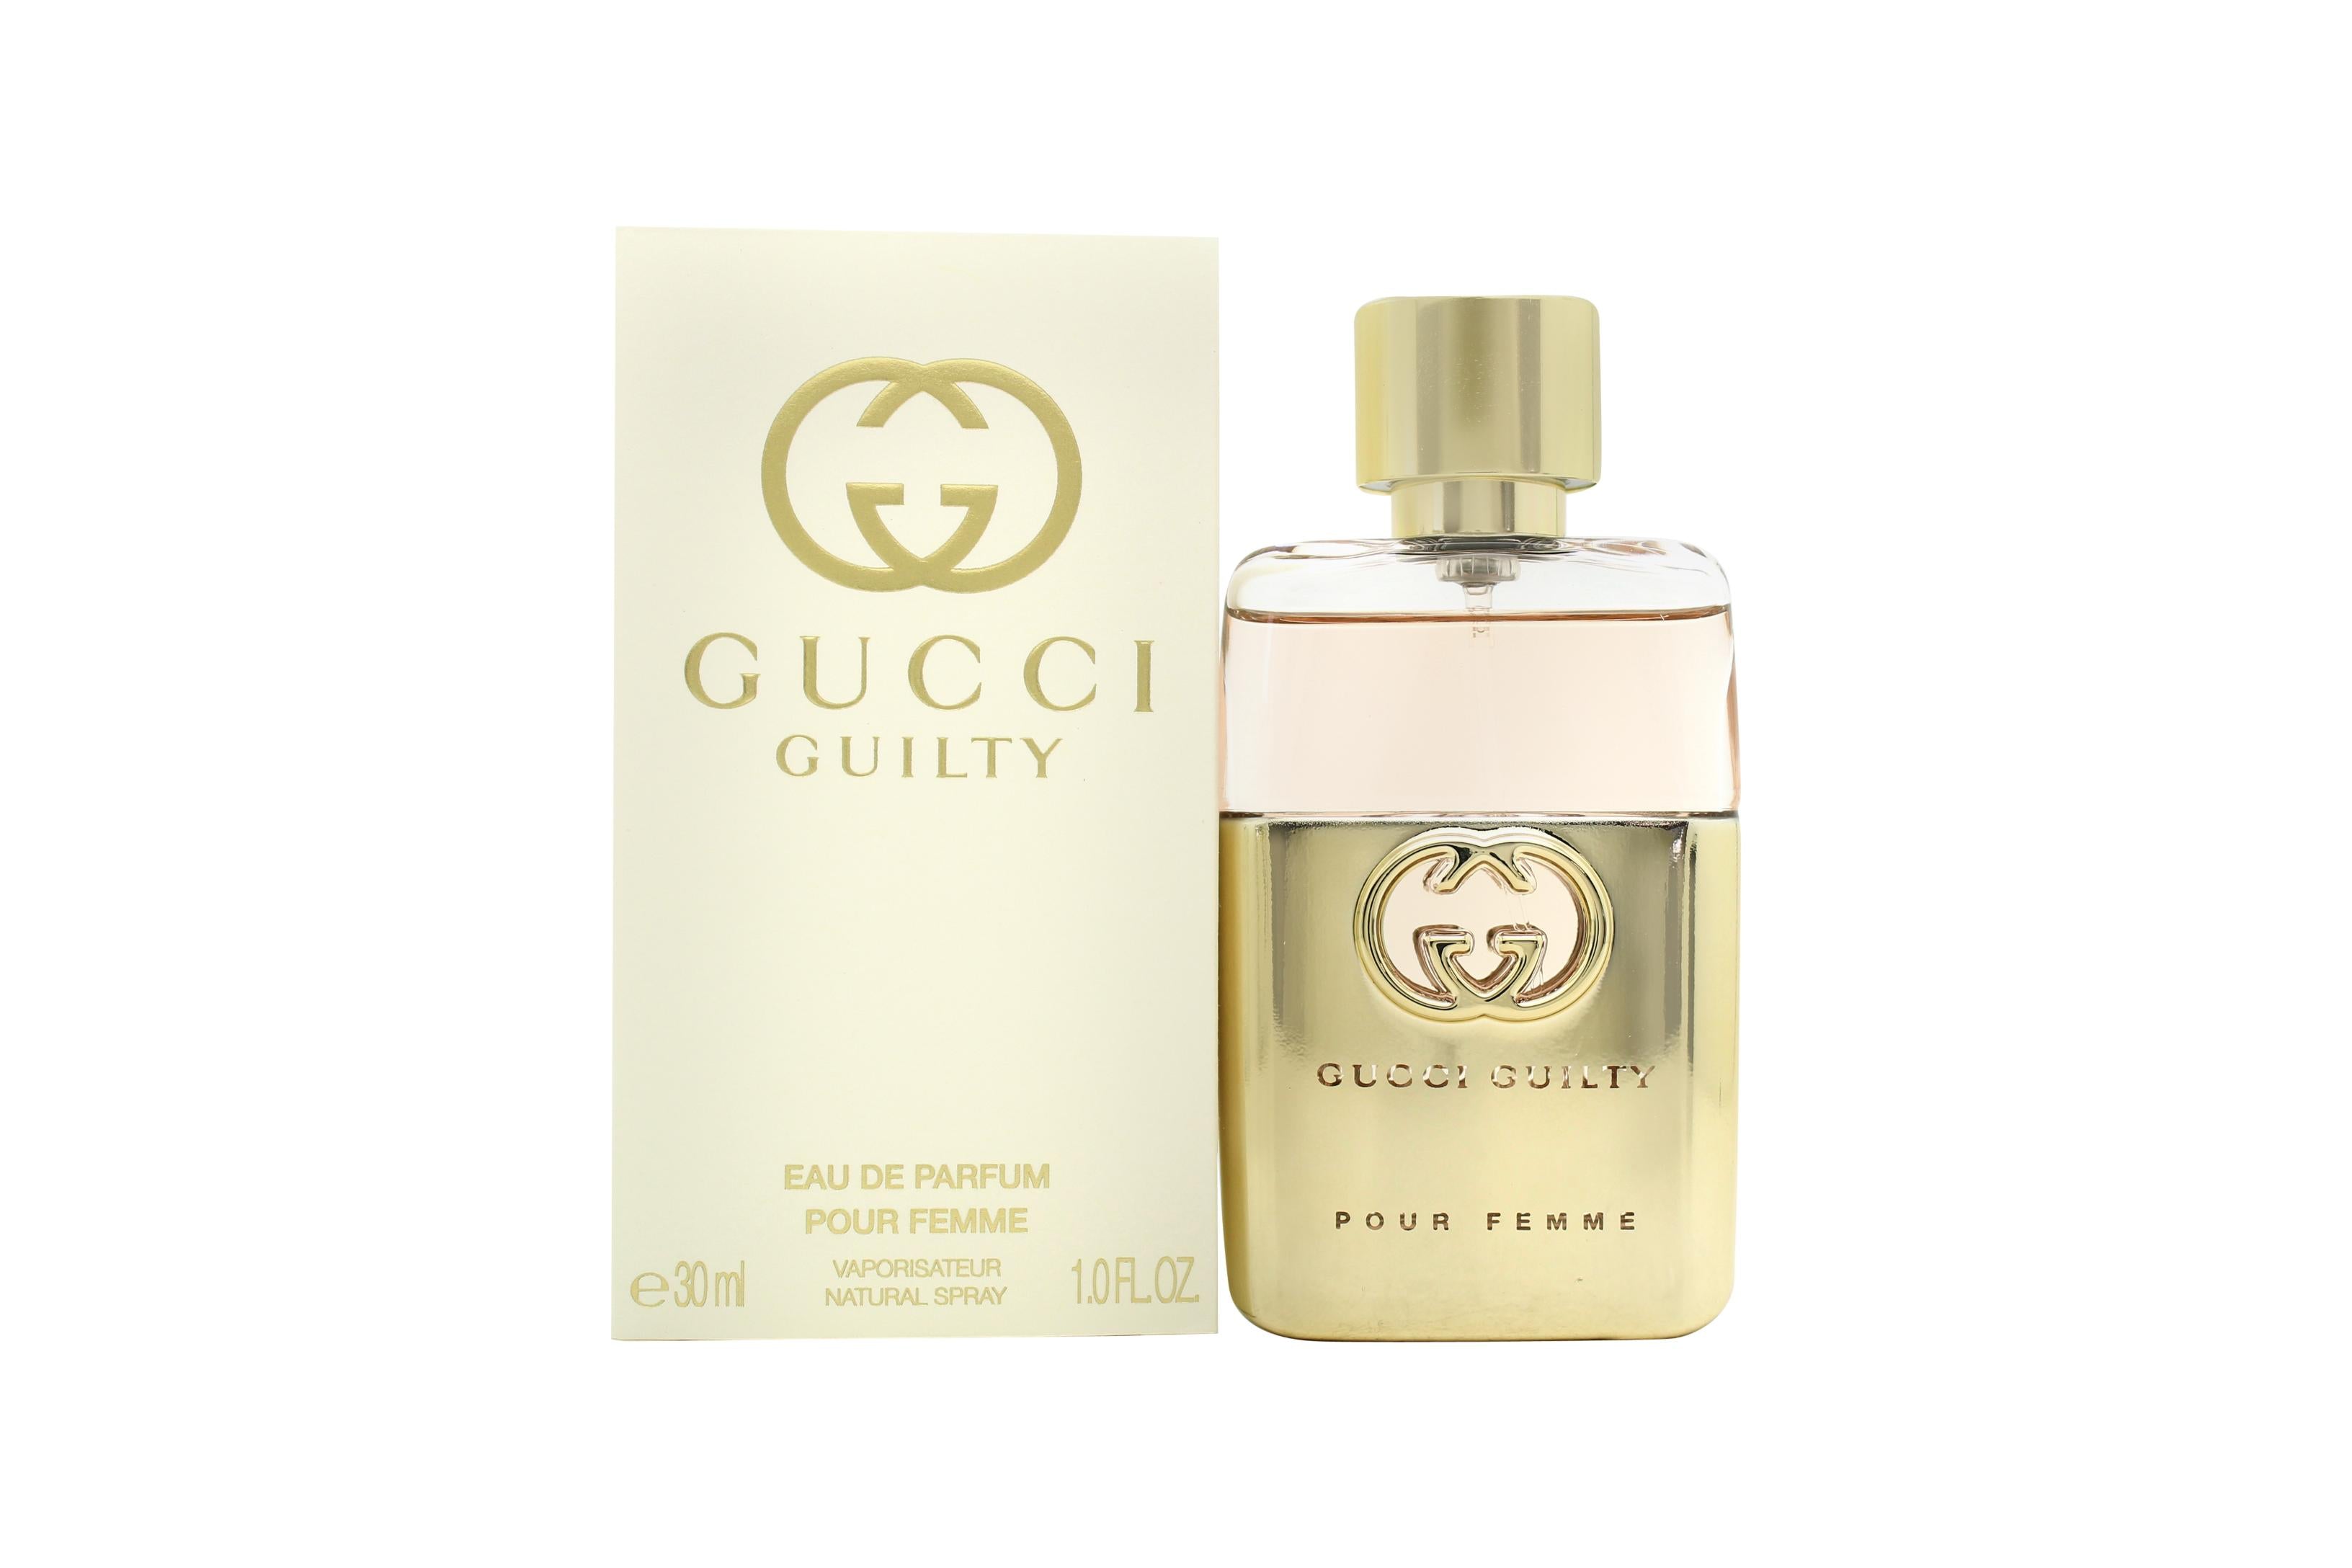 View Gucci Guilty Pour Femme Eau de Parfum 30ml Spray information